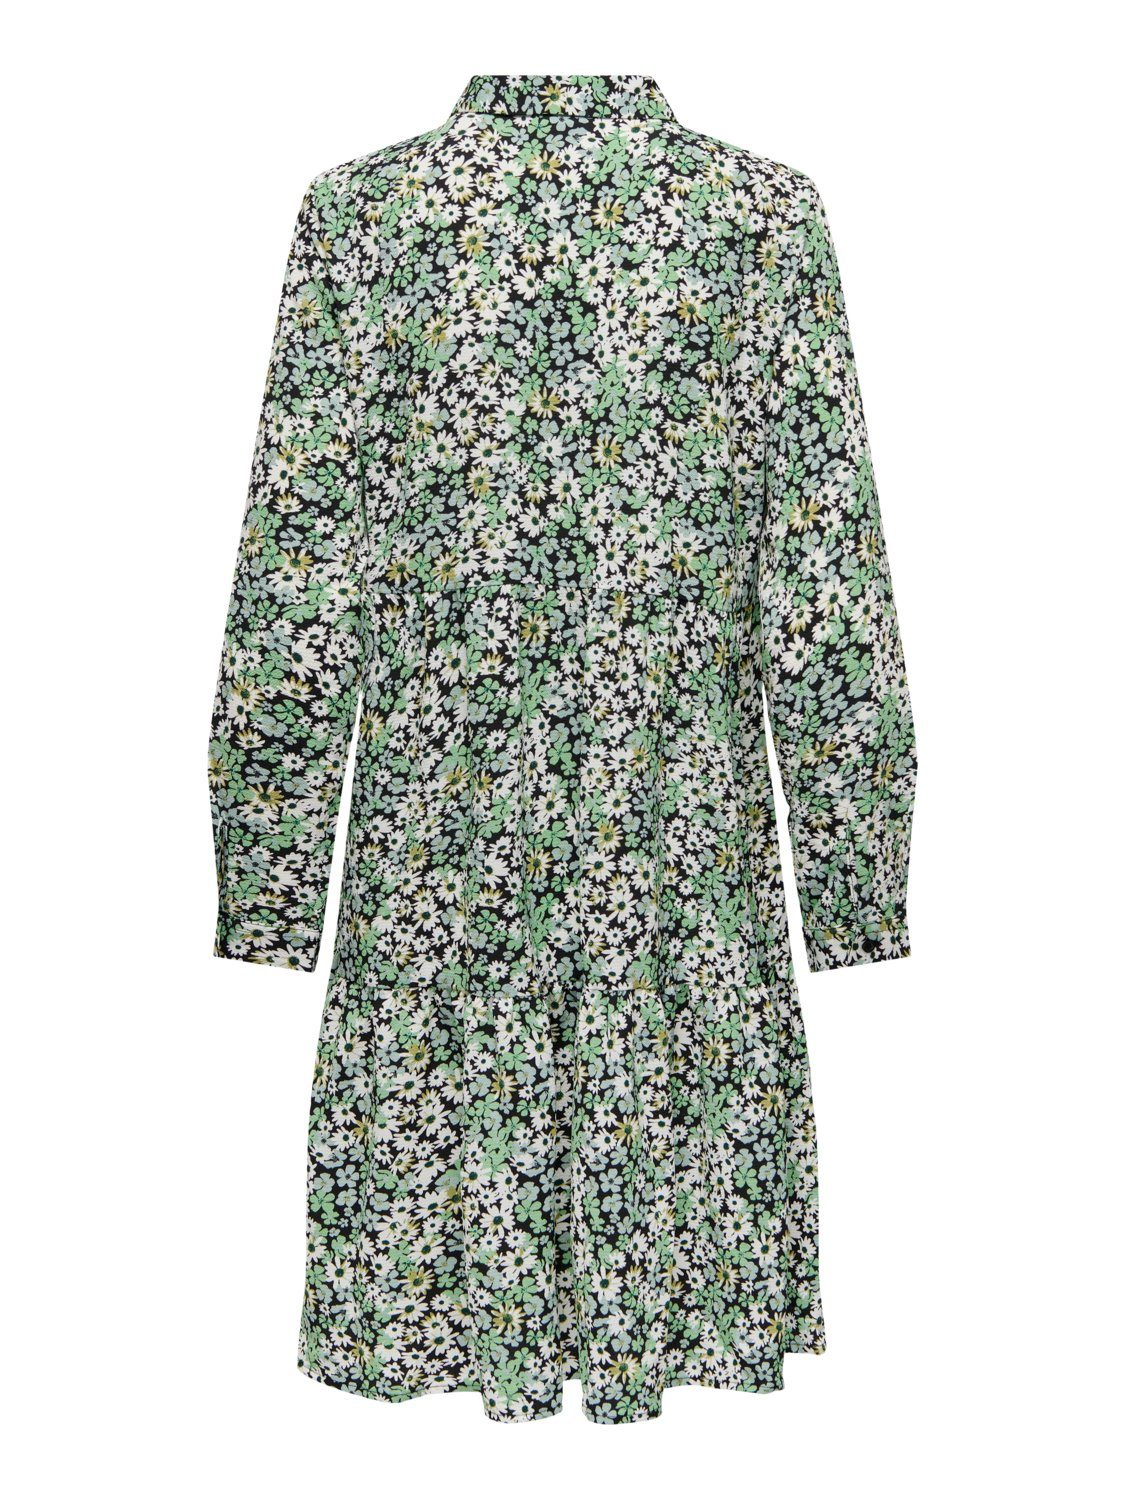 JACQUELINE de YONG Shirtkleid Kurzes in Tunika Grün Bluse JDYPIPER Kleid 4536 Gemusterte (lang) Langarm